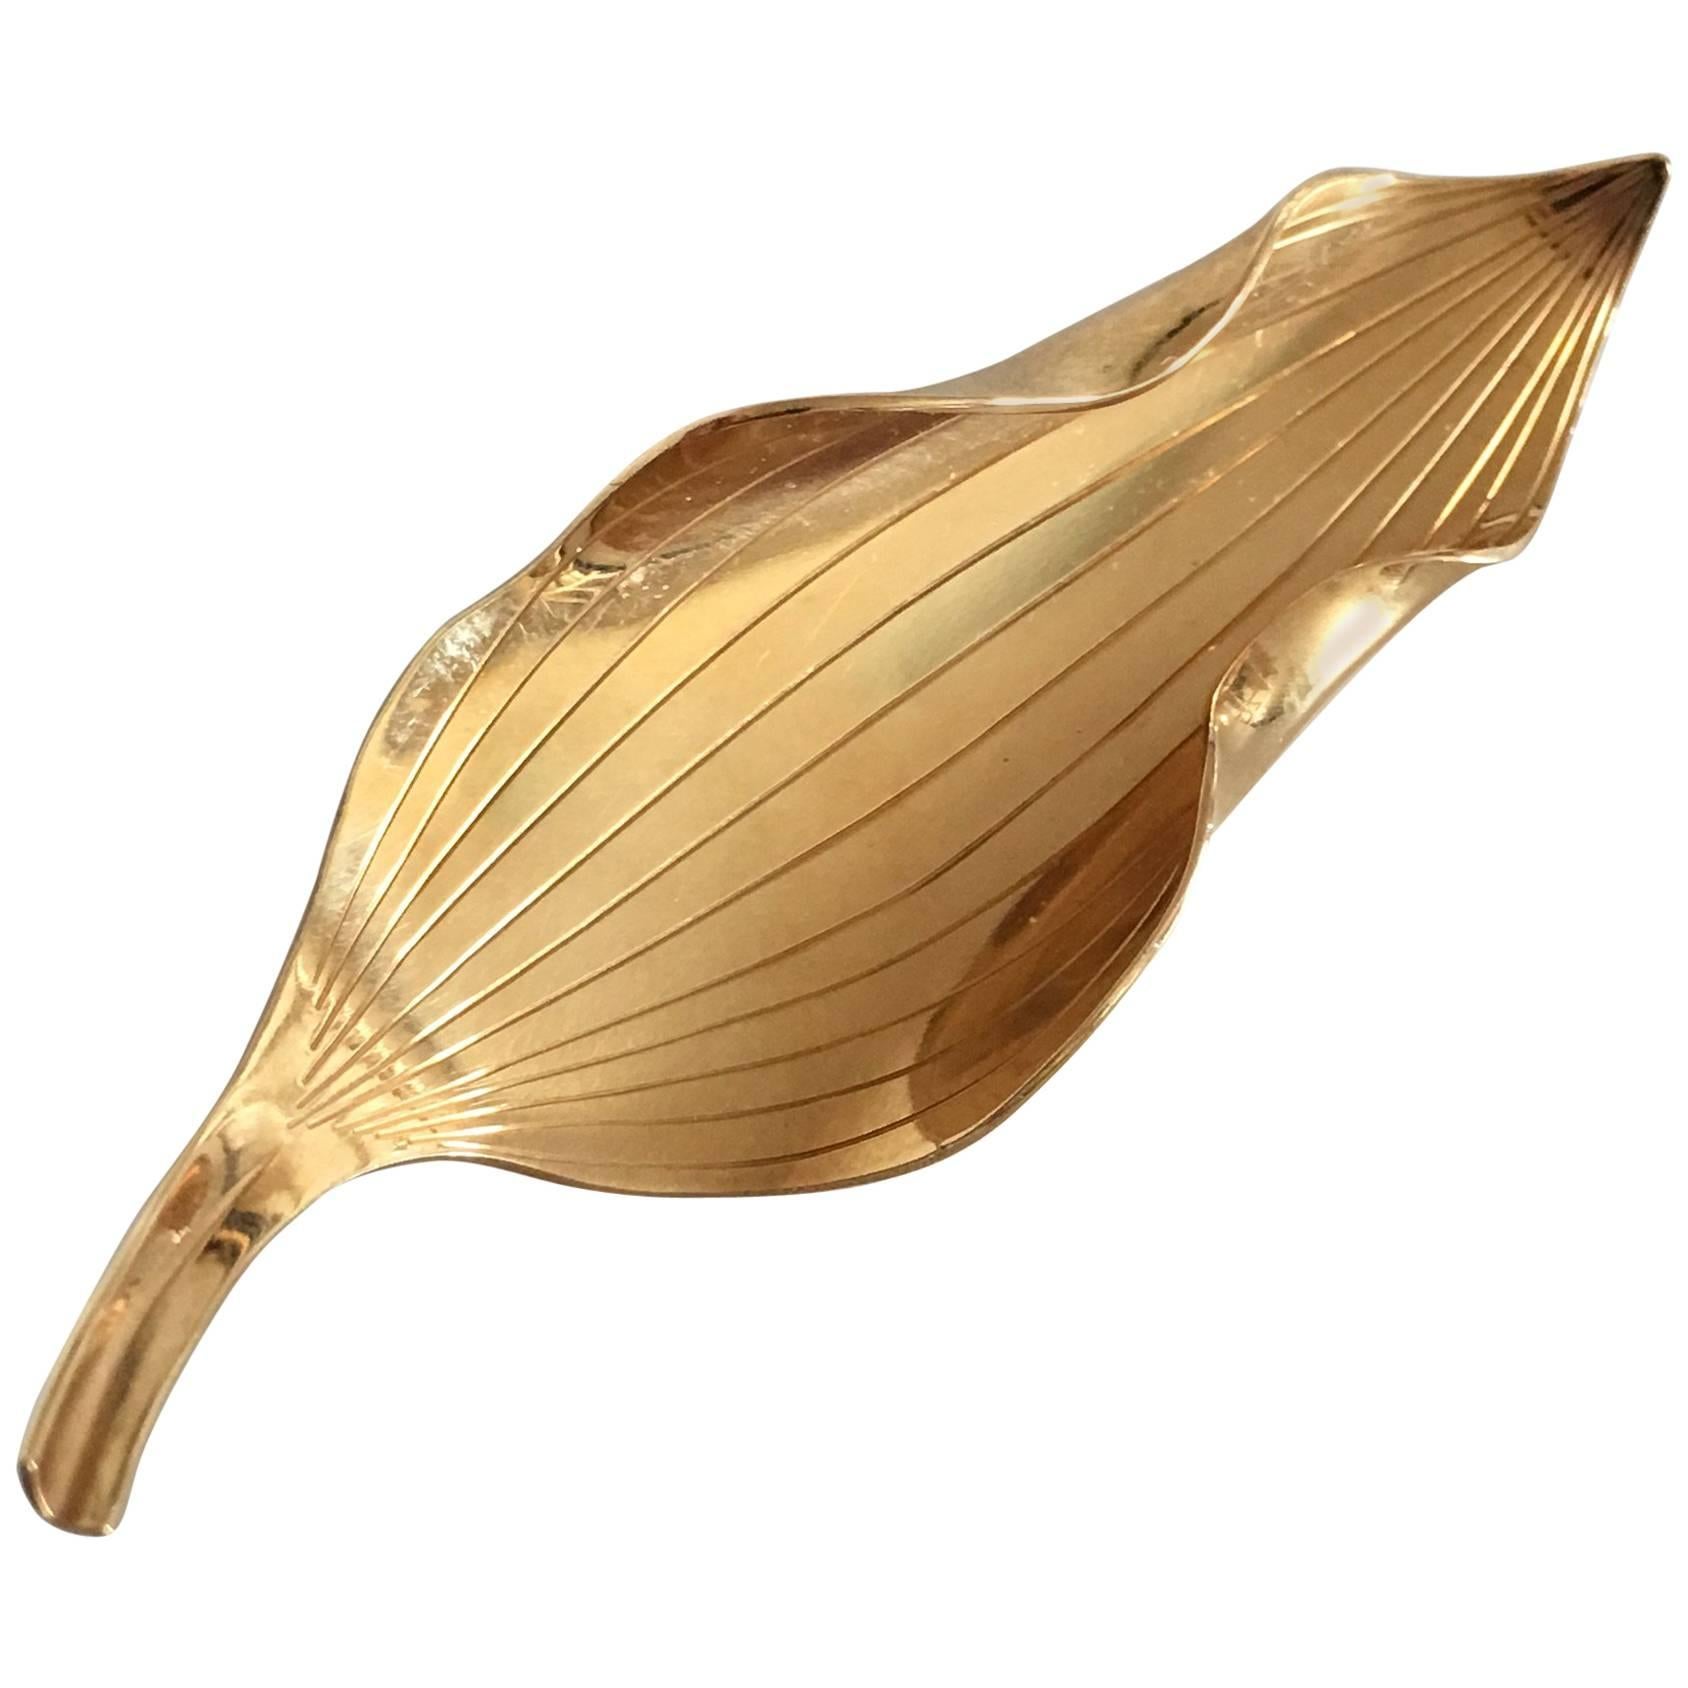 Anton Michelsen Leaf Shaped Brooch in 18-Karat Gold Designed by Gertrud Engel